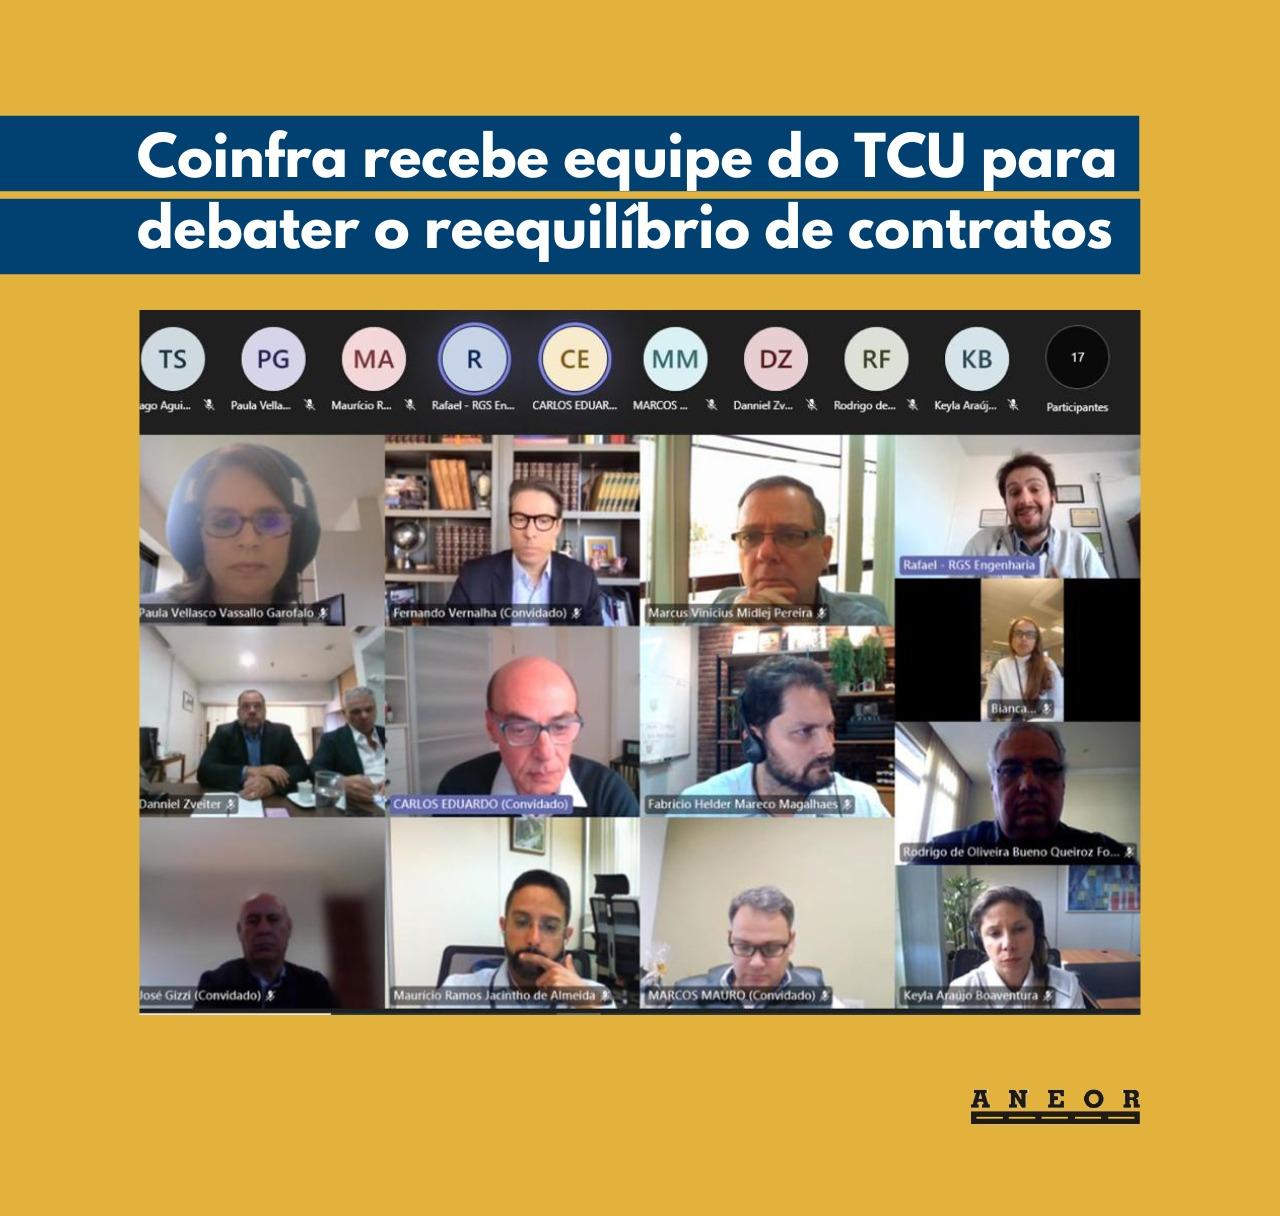 Coinfra promove reunião com equipe do TCU para debater o reequilíbrio de contratos